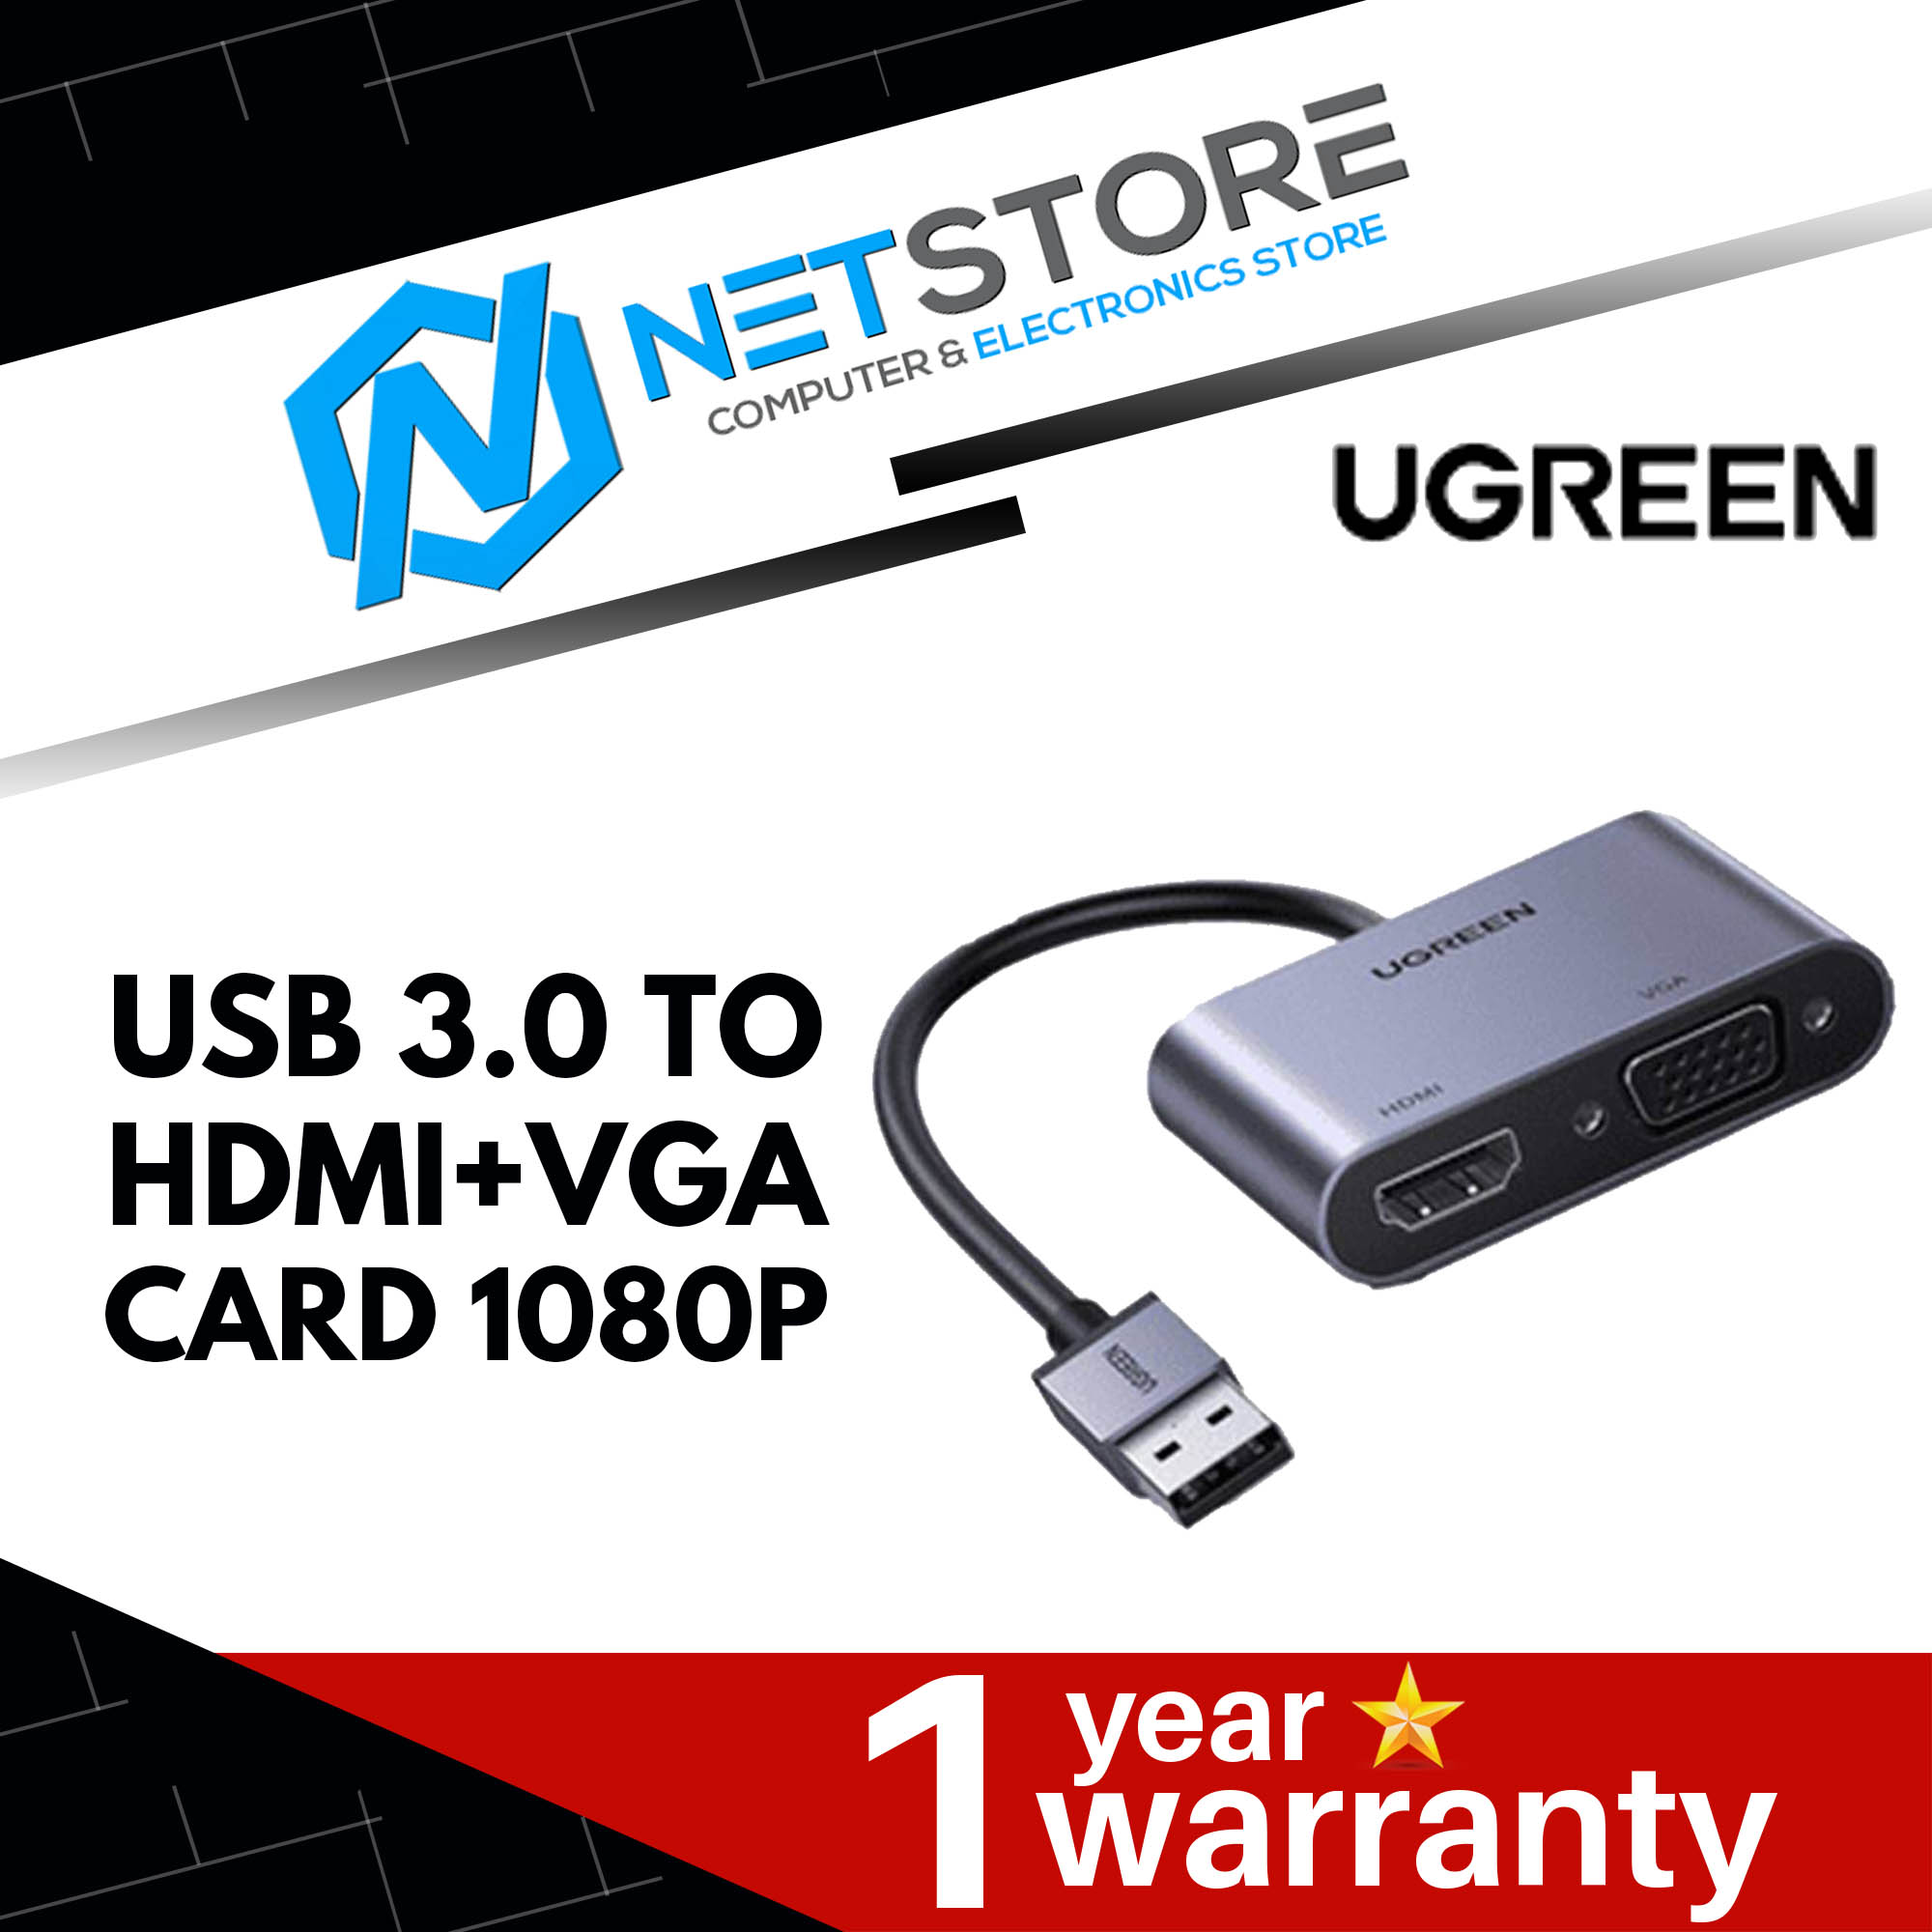 UGREEN USB 3.0 TO HDMI+VGA CARD 1080P - UG-CM449-20518